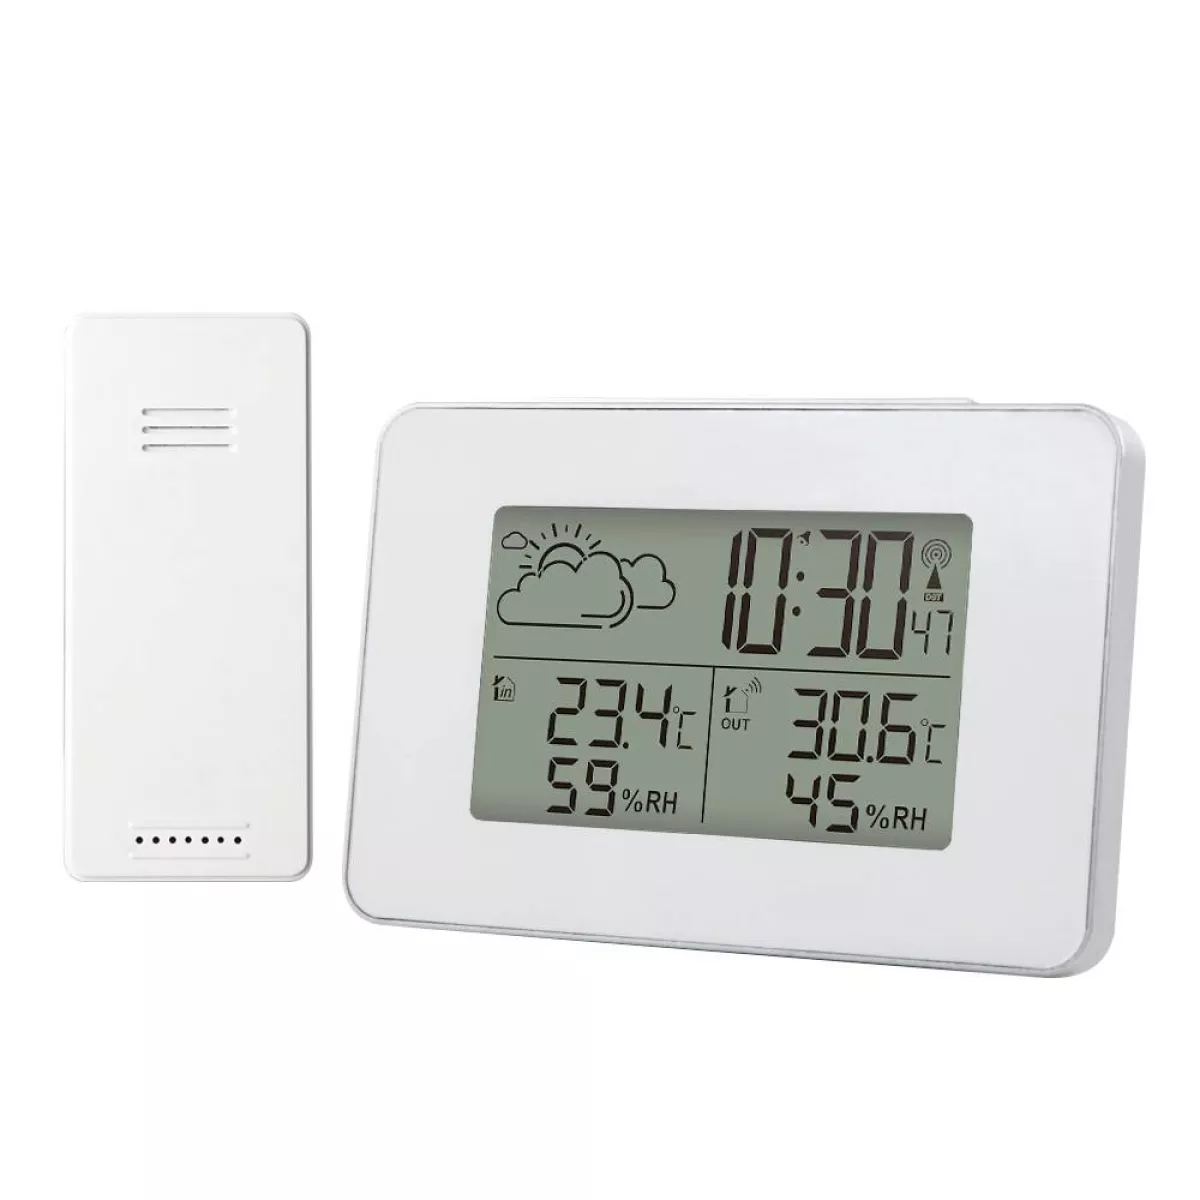 #3 - Digital vejrstation - Trådløs - Termoter - Klokke - Hygrometer - LCD skærm - Hvid